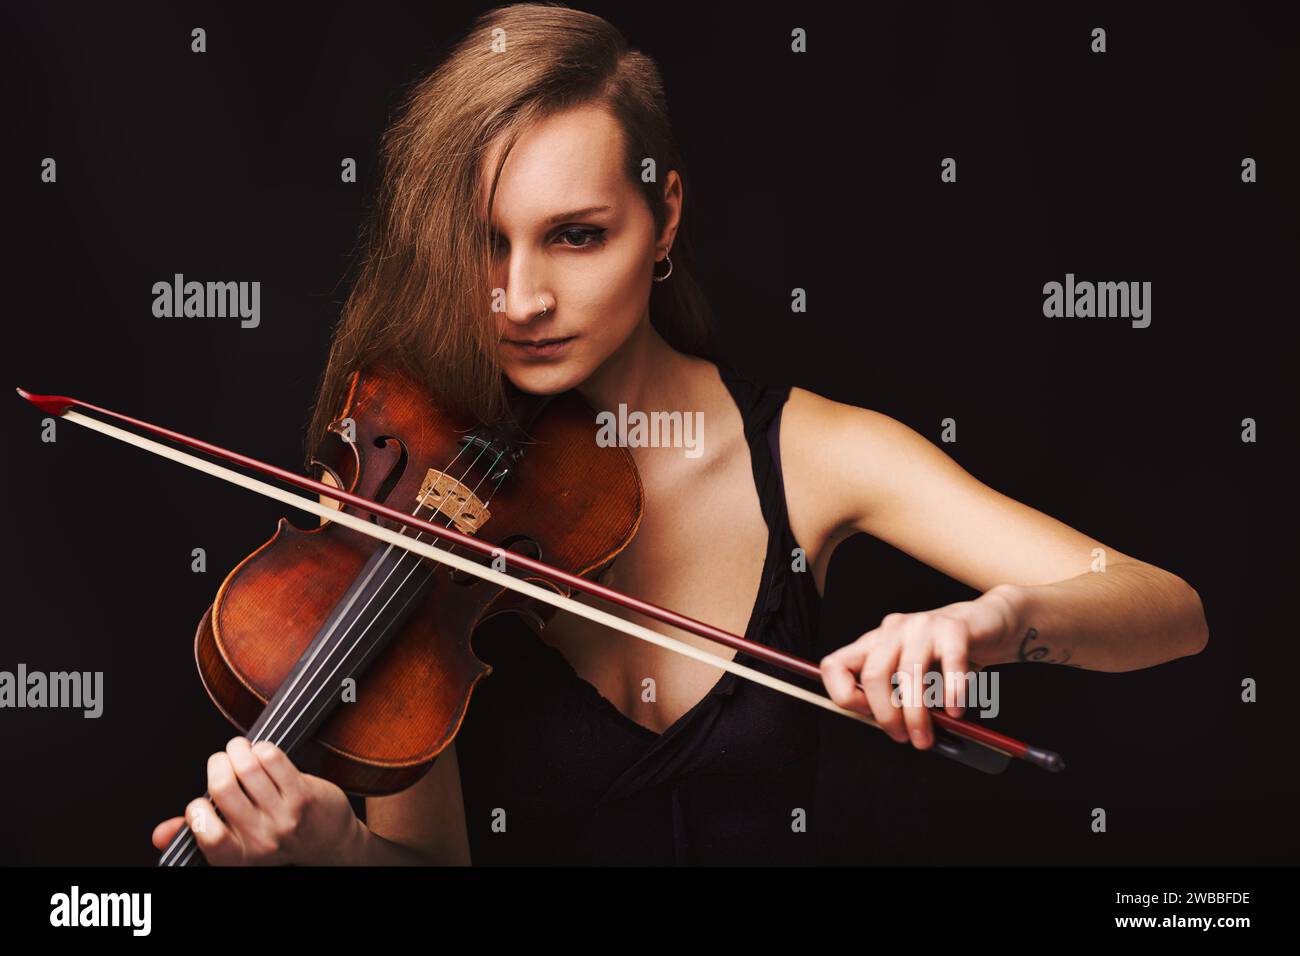 Gros plan sur une musicienne dévouée imprégnée de son art, le violon devient une extension de son esprit créatif Banque D'Images